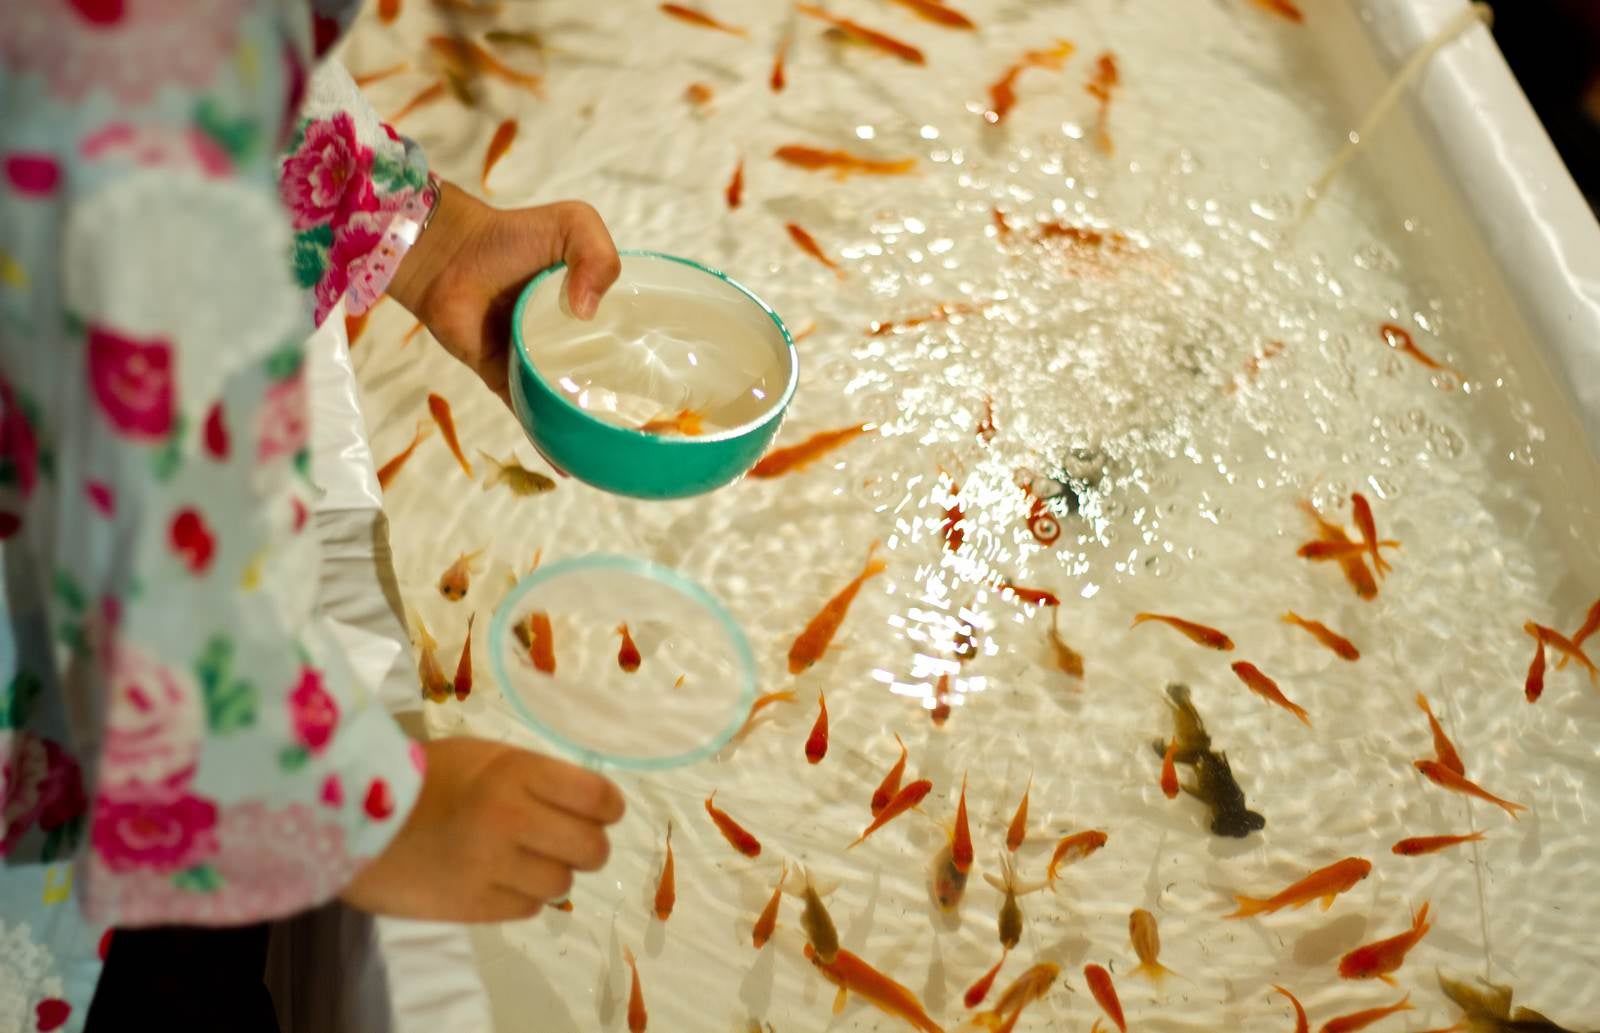 「金魚すくいをする子供」の写真